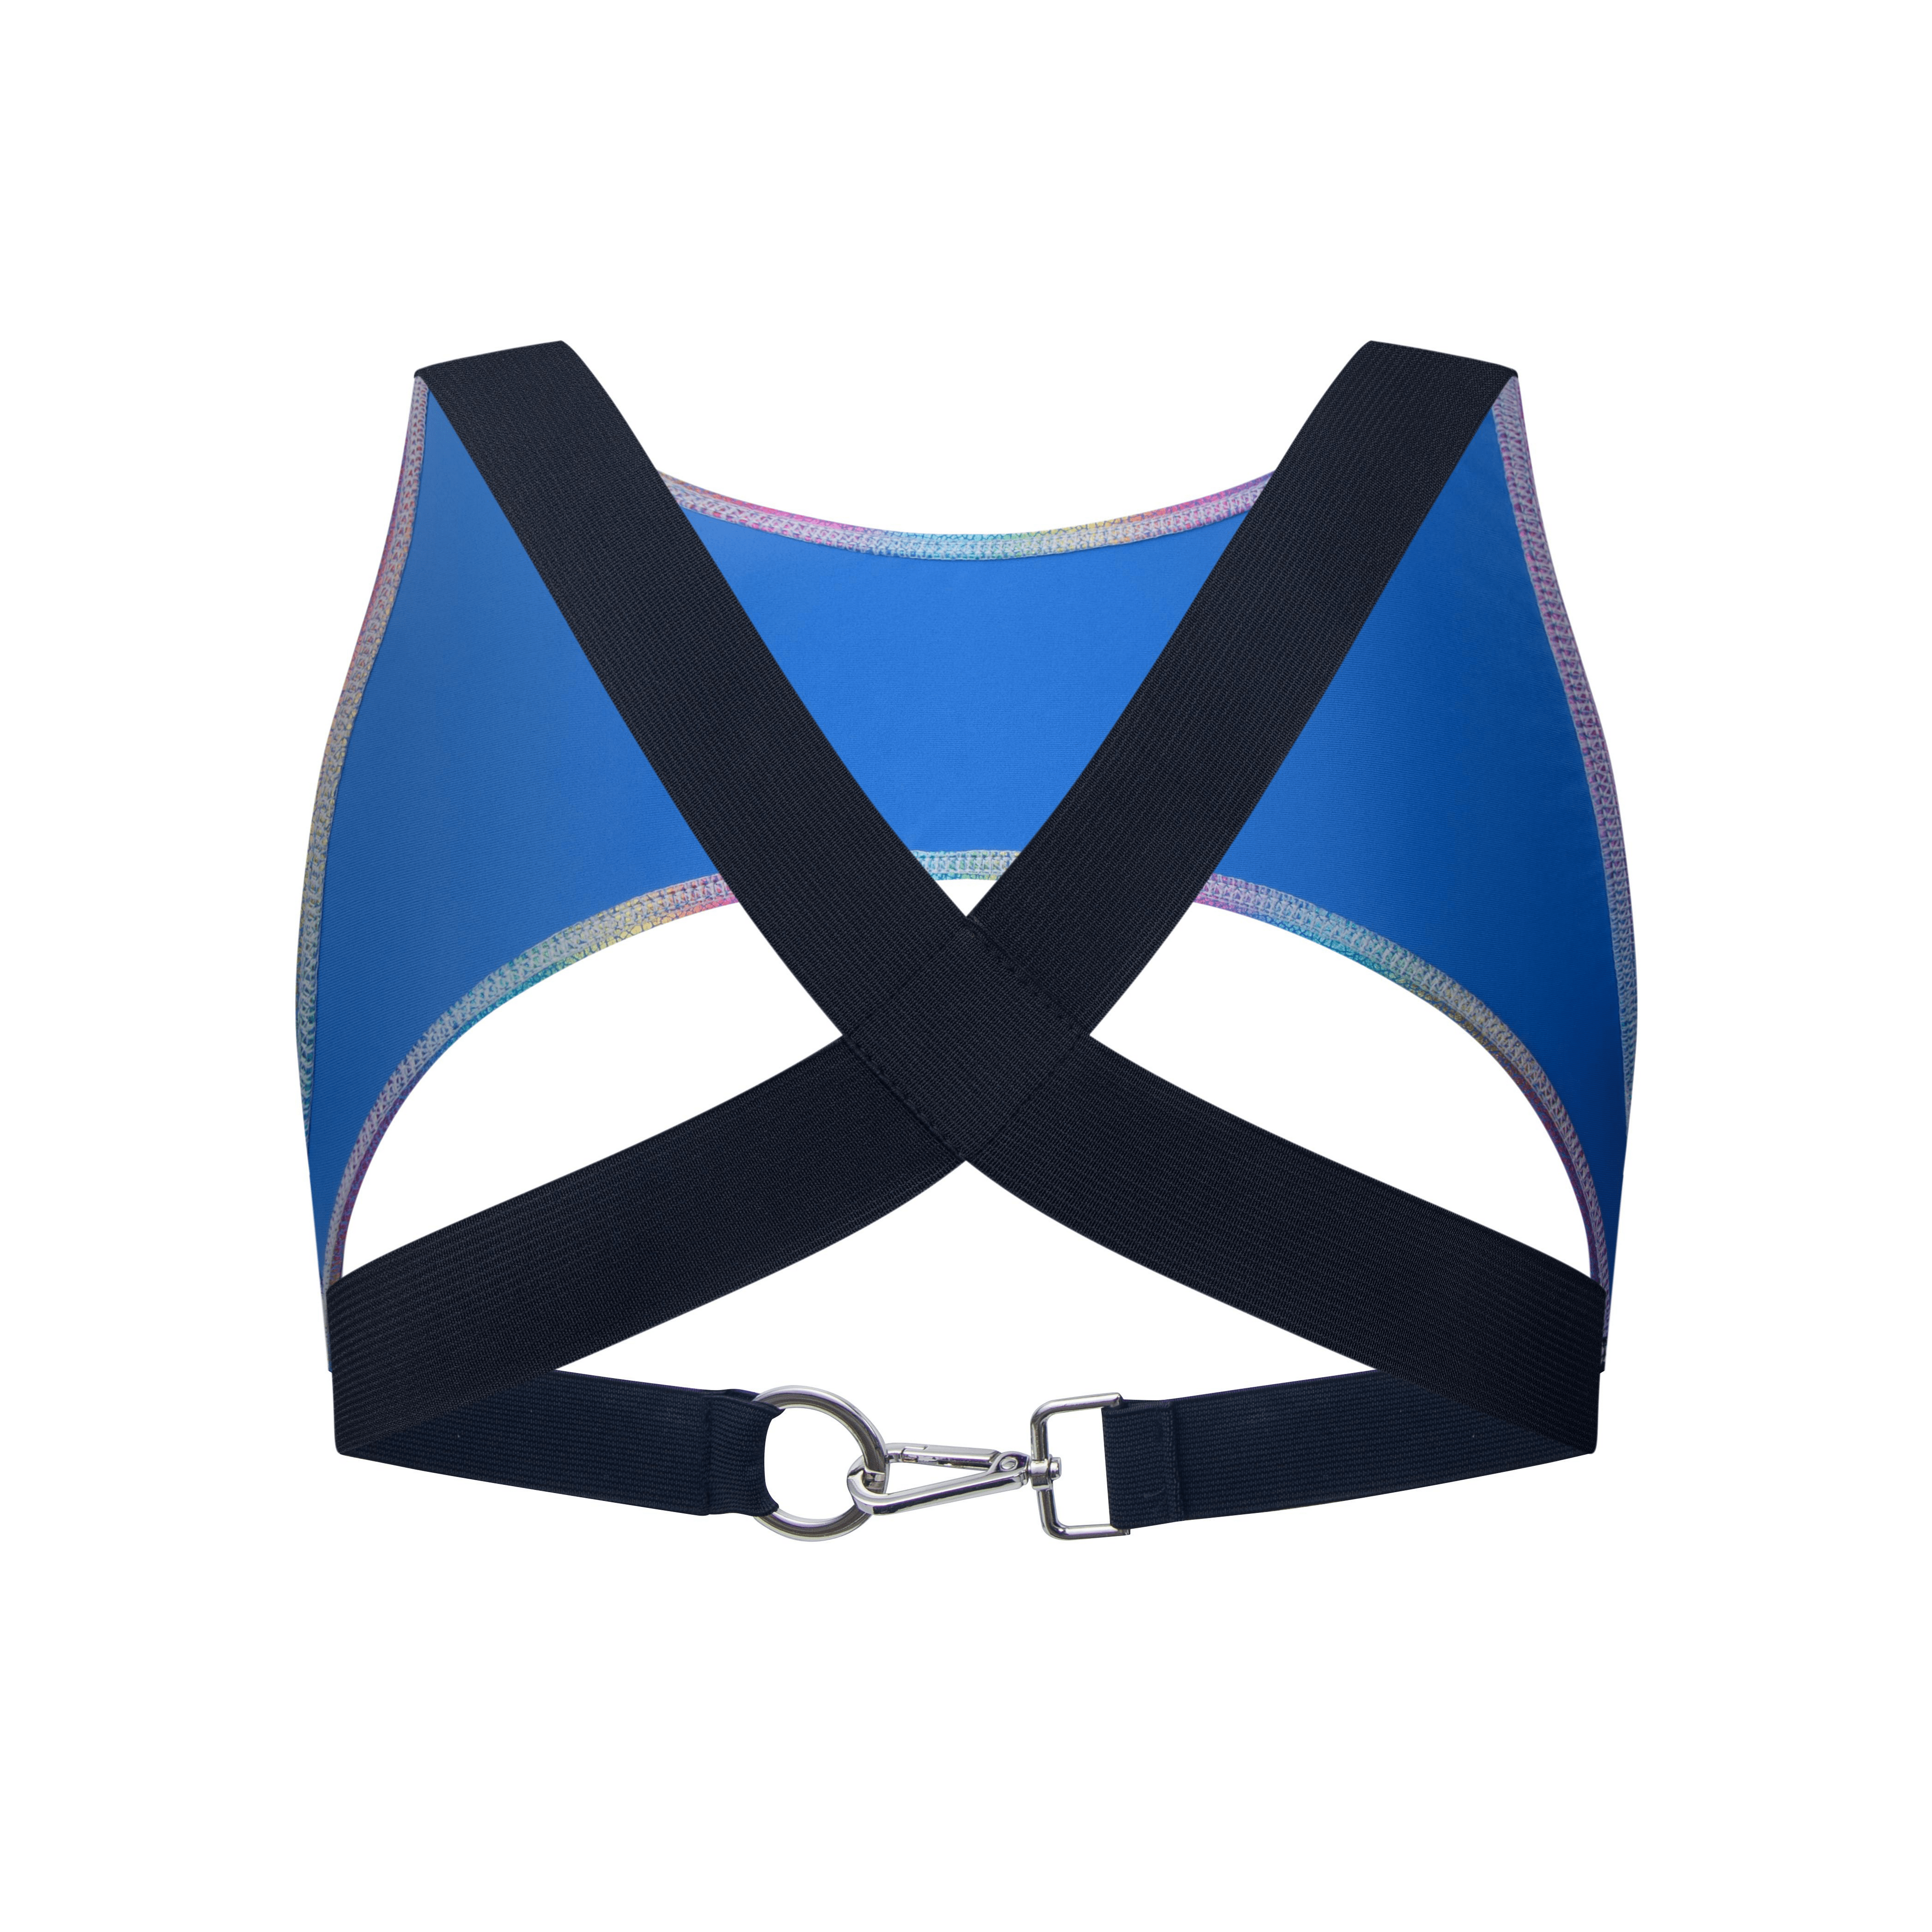 Men's JOCKMAIL JM997 - 'X' Perforated Mesh Harness w/strap